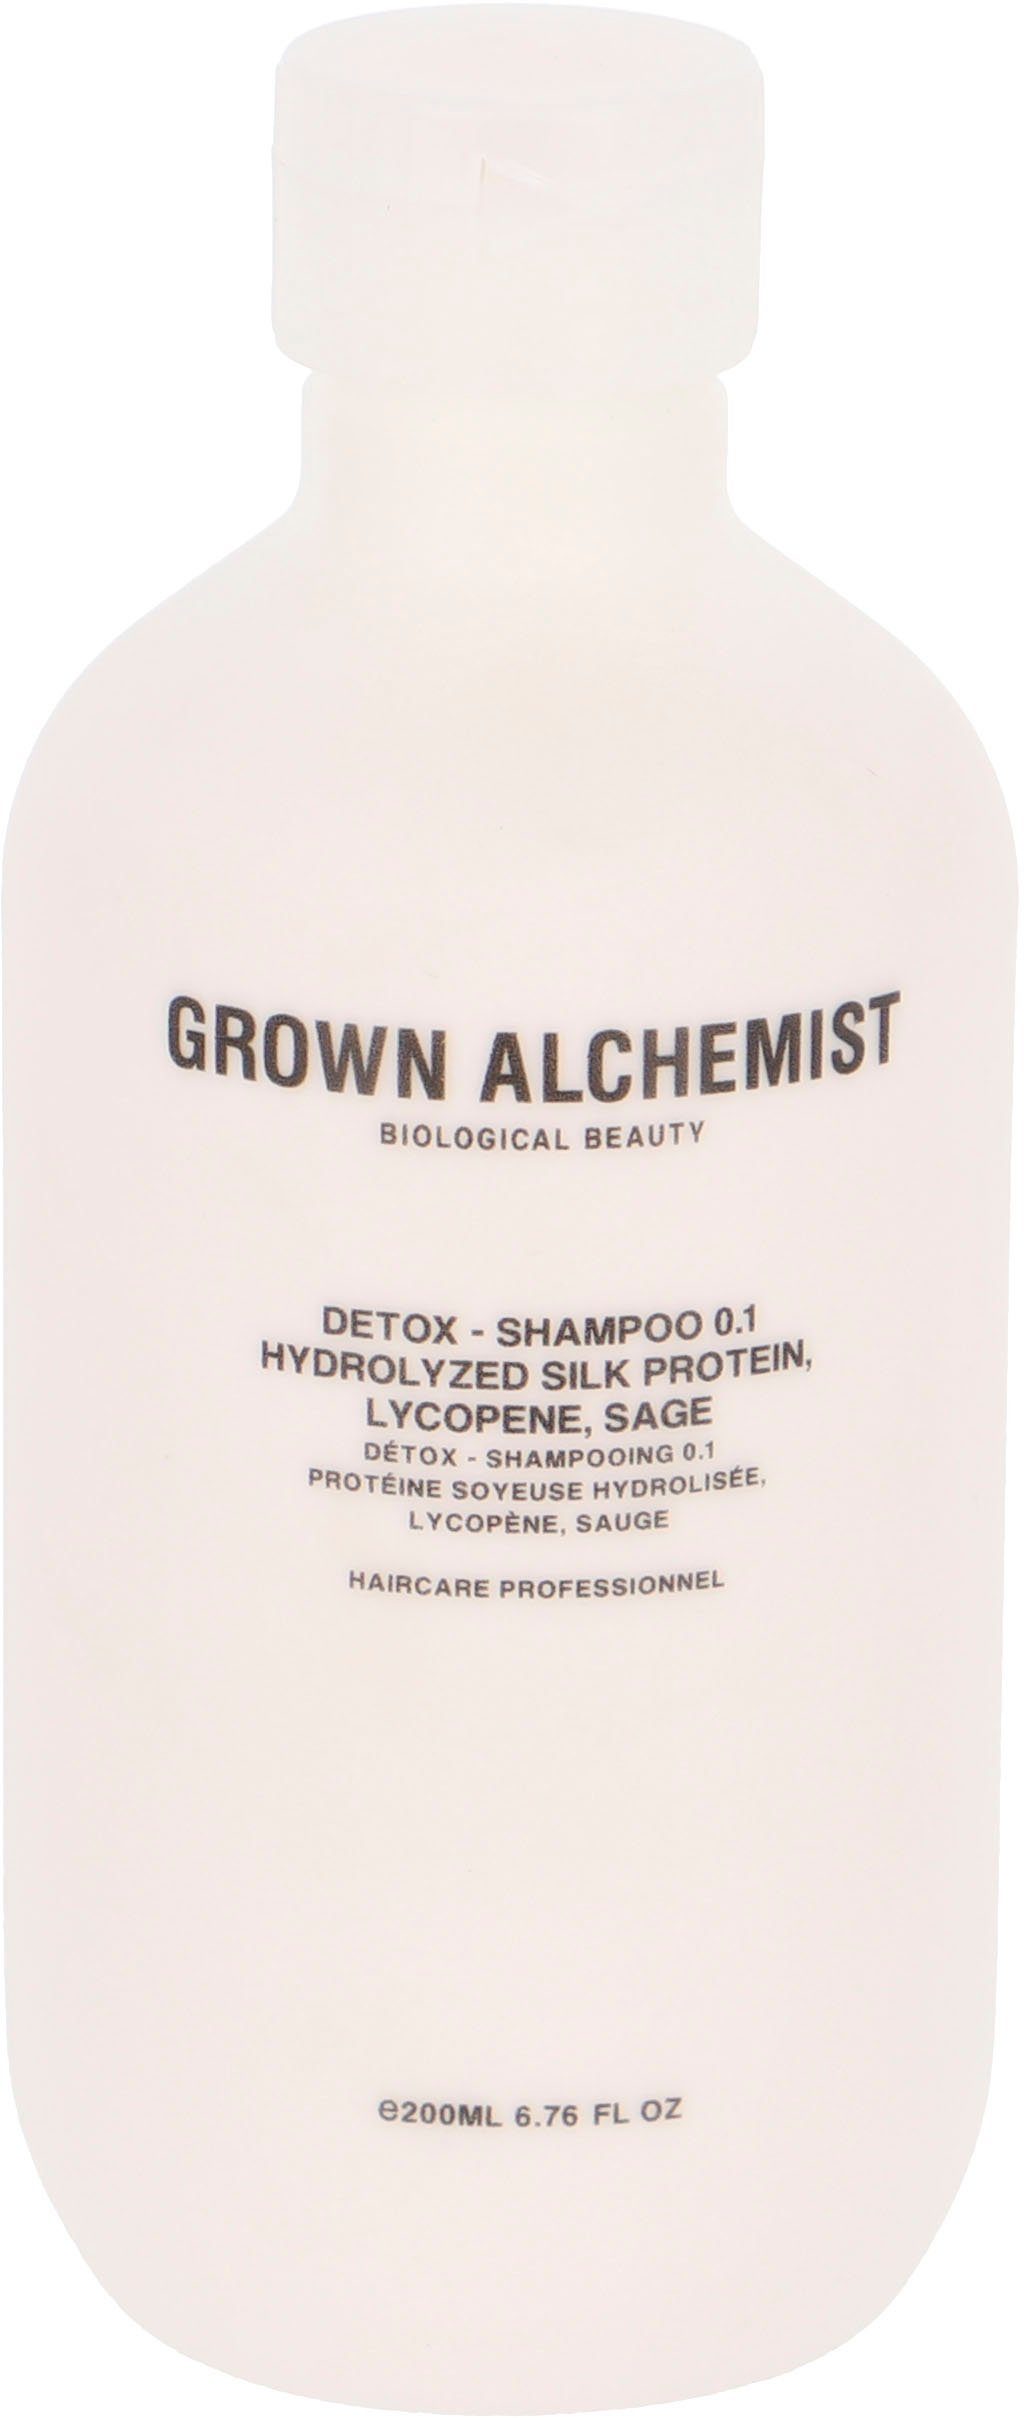 Begrenzter Lagerbestand verfügbar GROWN ALCHEMIST Haarshampoo Detox Lycopene, 0.1, Protein, Hydrolyzed Sage - Shampoo Silk